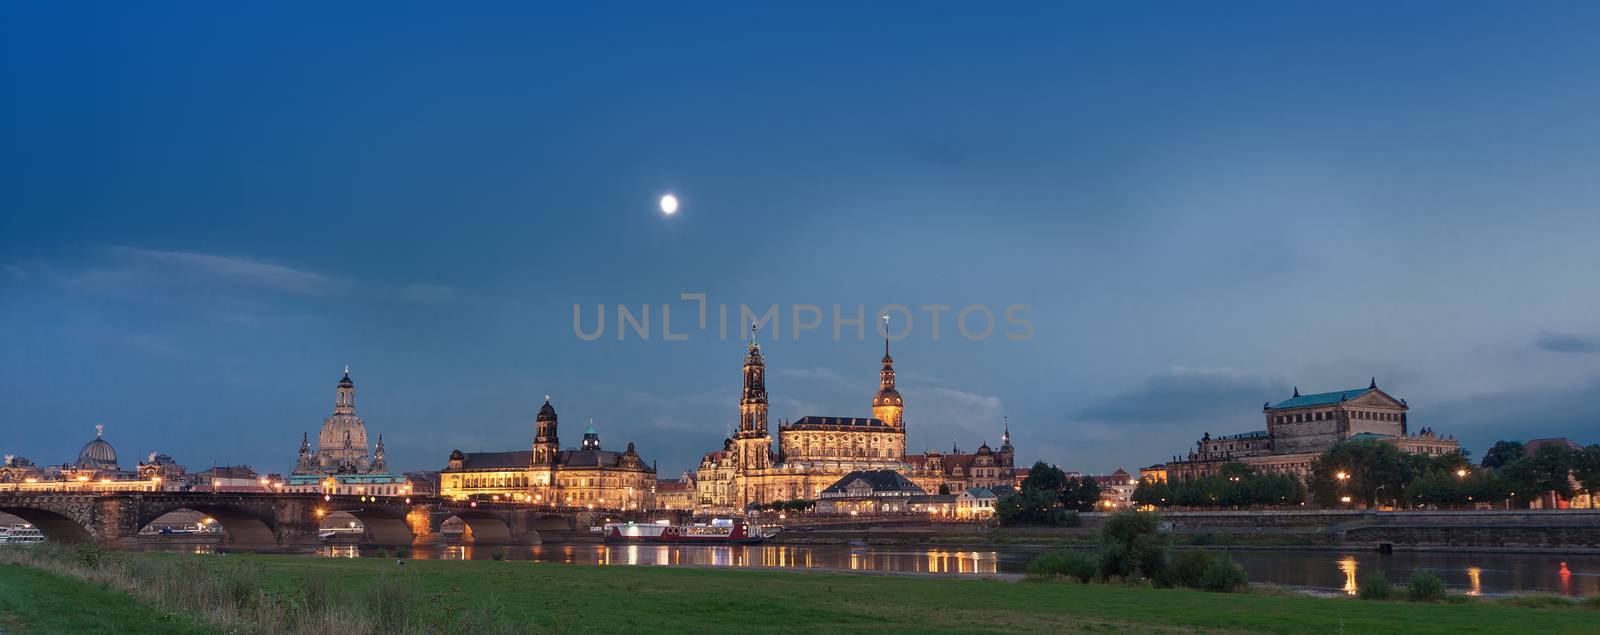 Dresden at night by mot1963